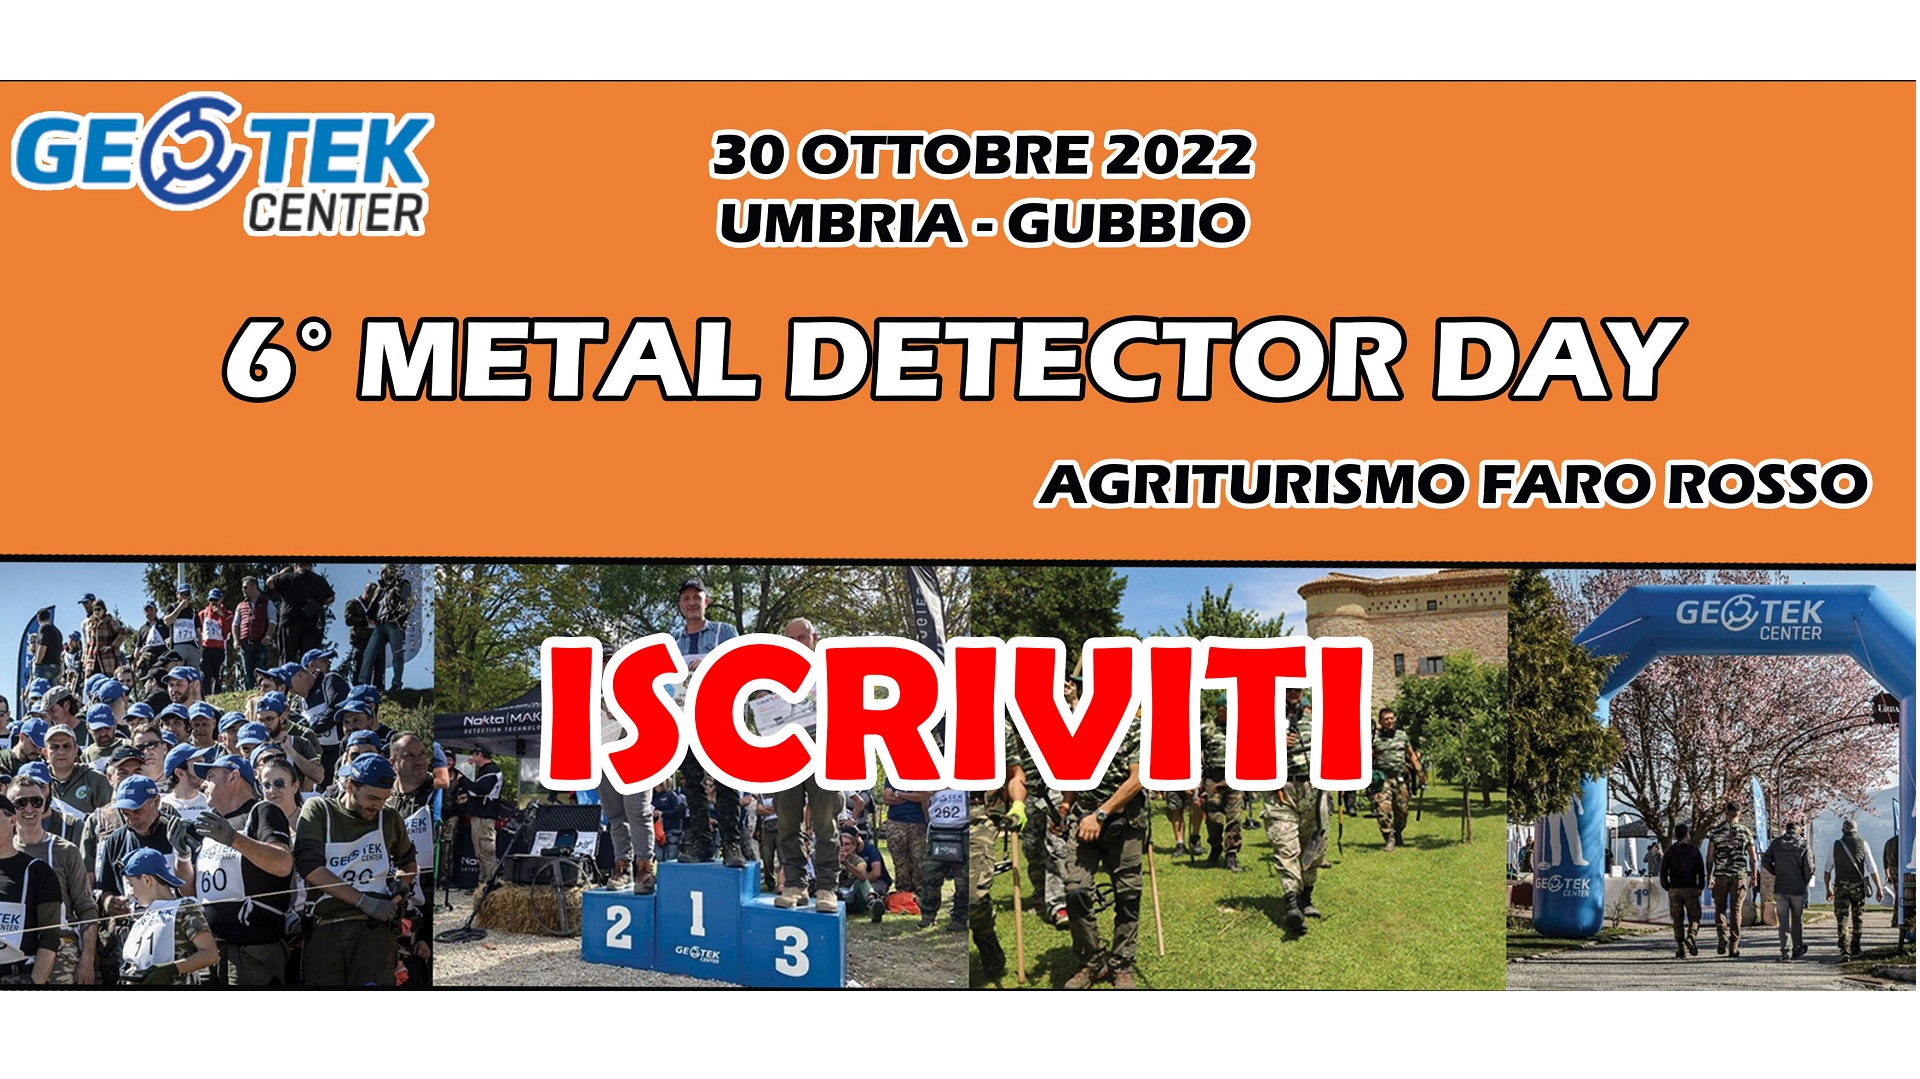 6 metal detector day